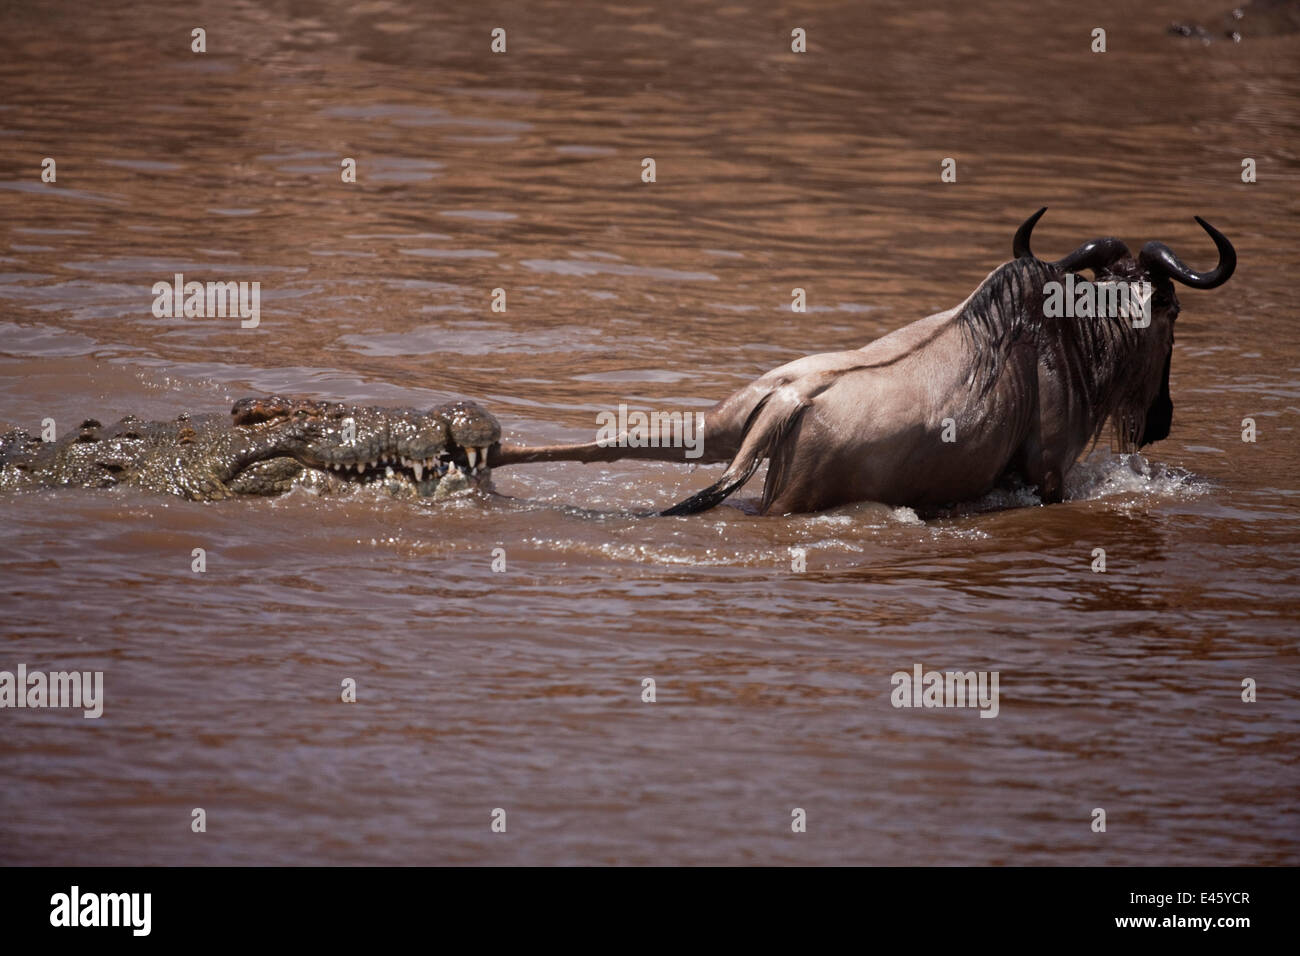 El cocodrilo del Nilo (Crocodylus niloticus) atacan a un ñu (Connochaetes taurinus) que cruza el río Mara. Reserva Nacional de Masai Mara, Kenya, octubre de 2009 Foto de stock